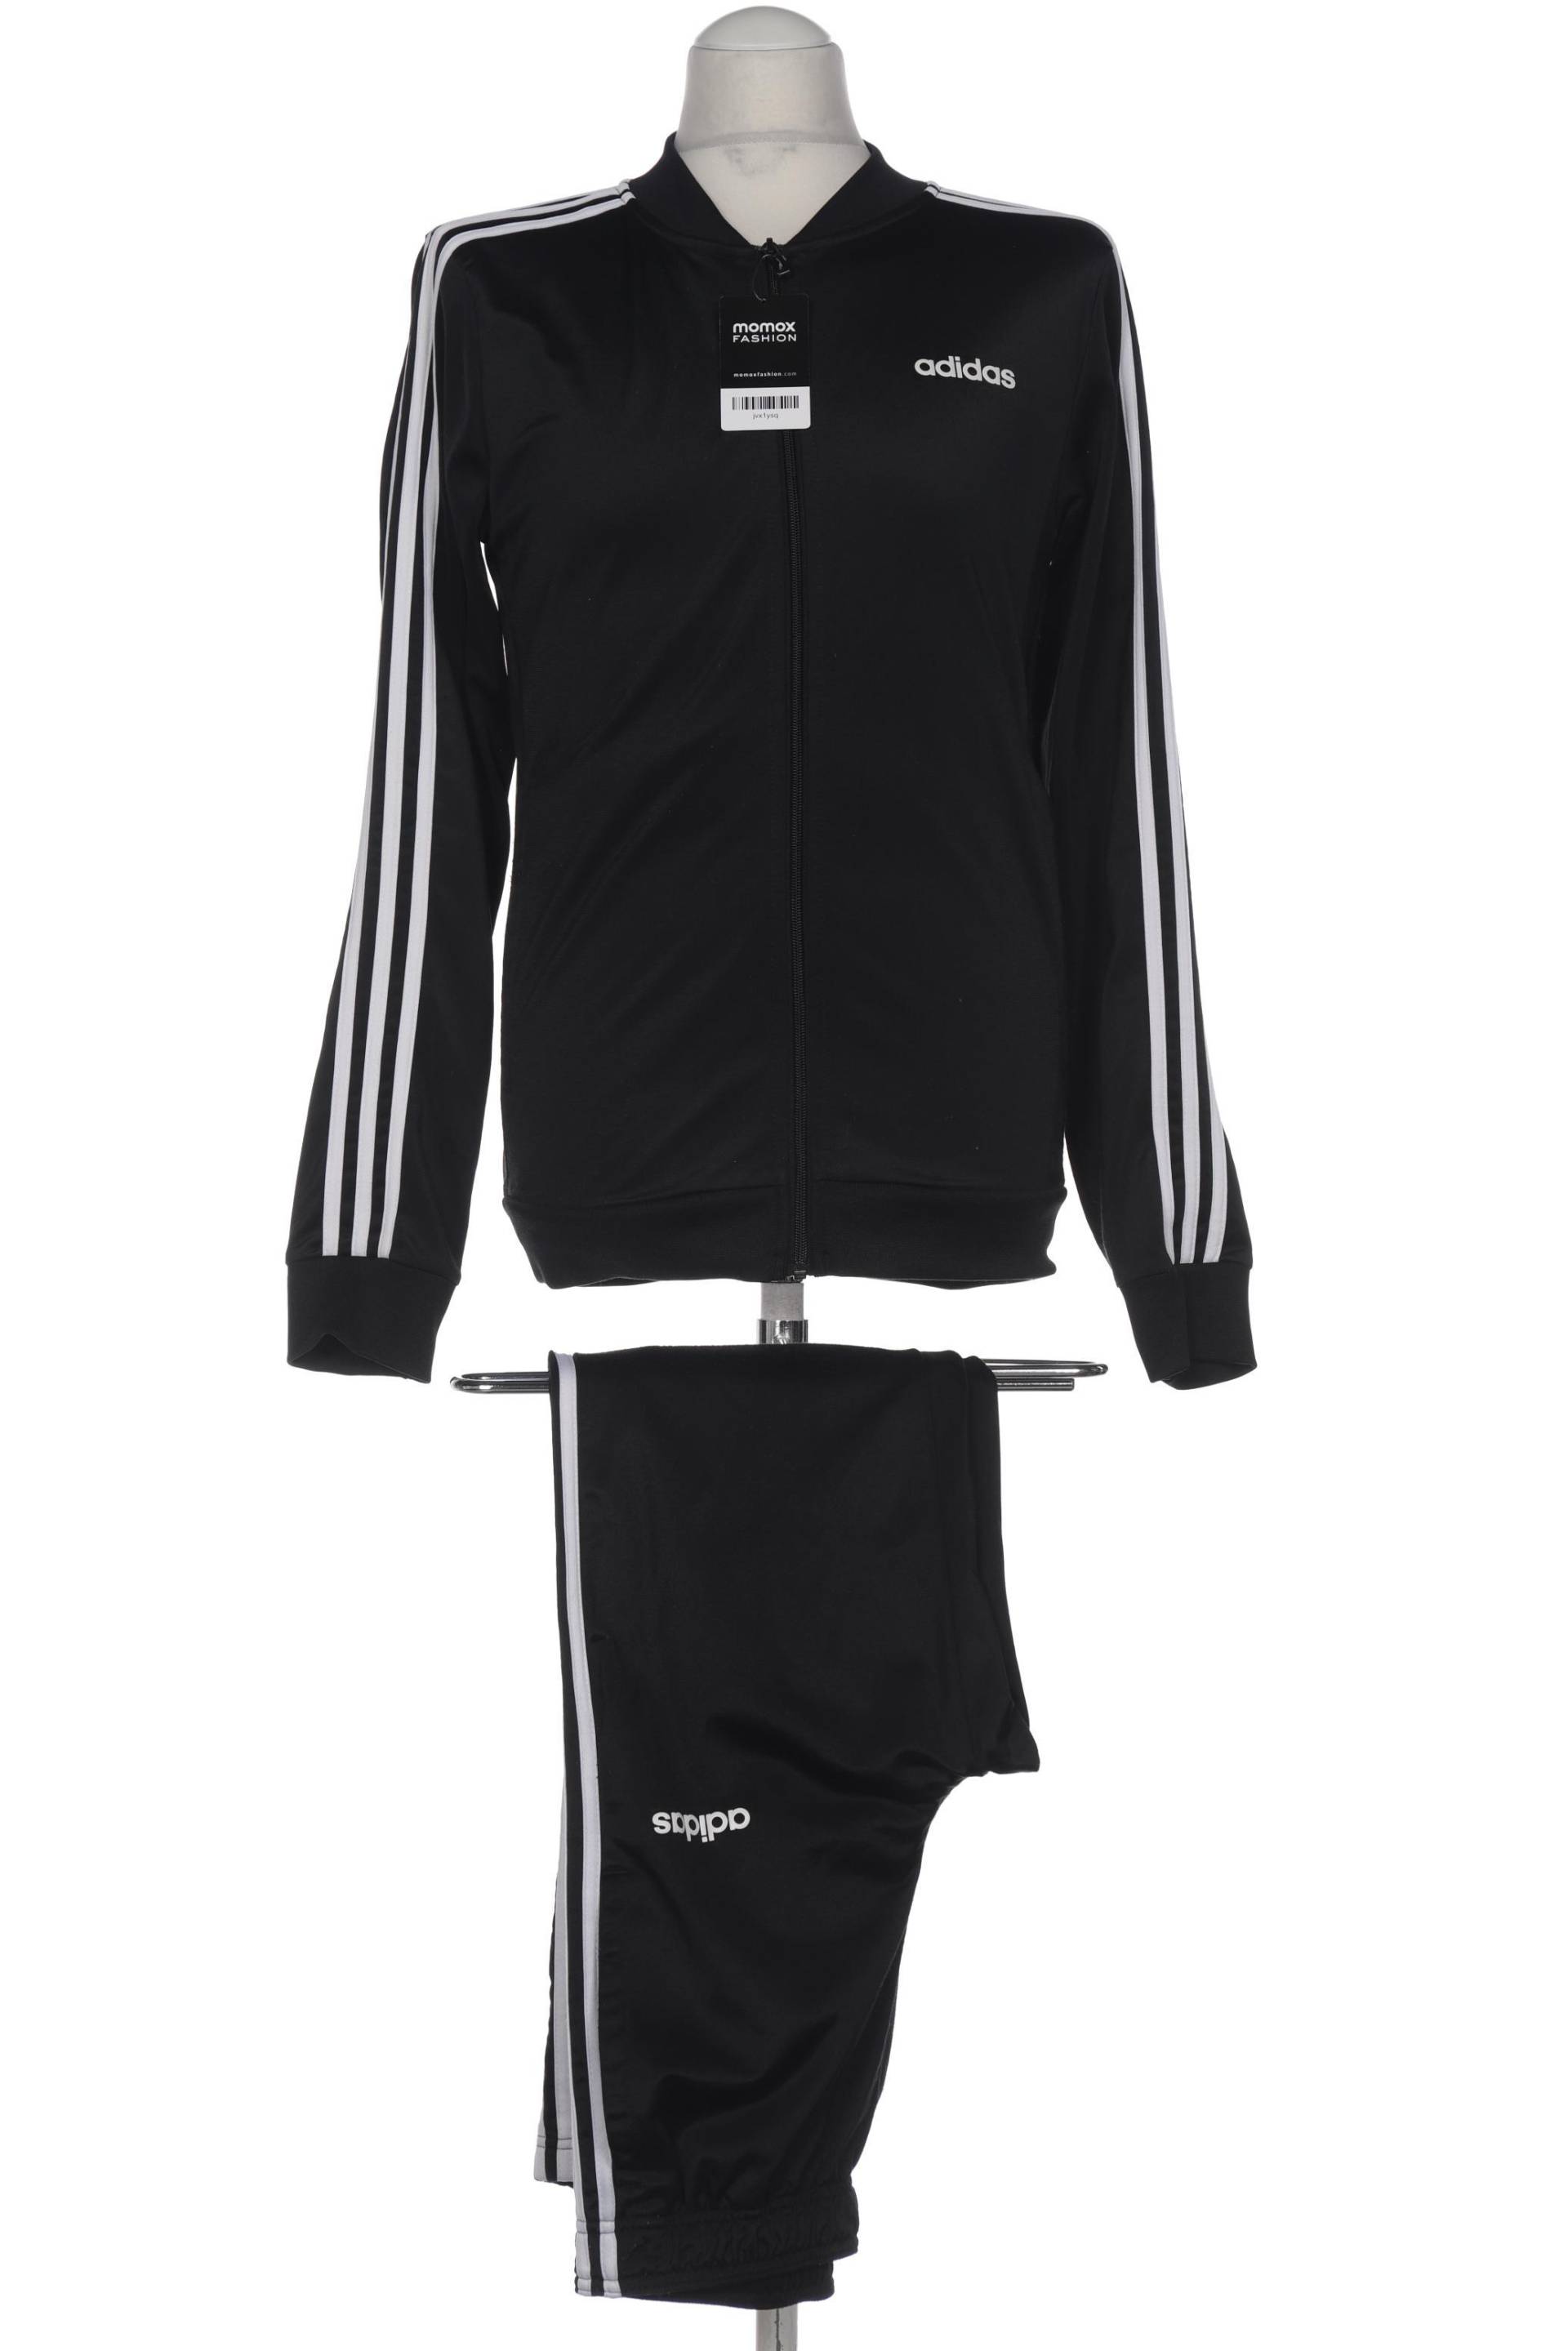 adidas Herren Anzug, schwarz, Gr. 46 von Adidas